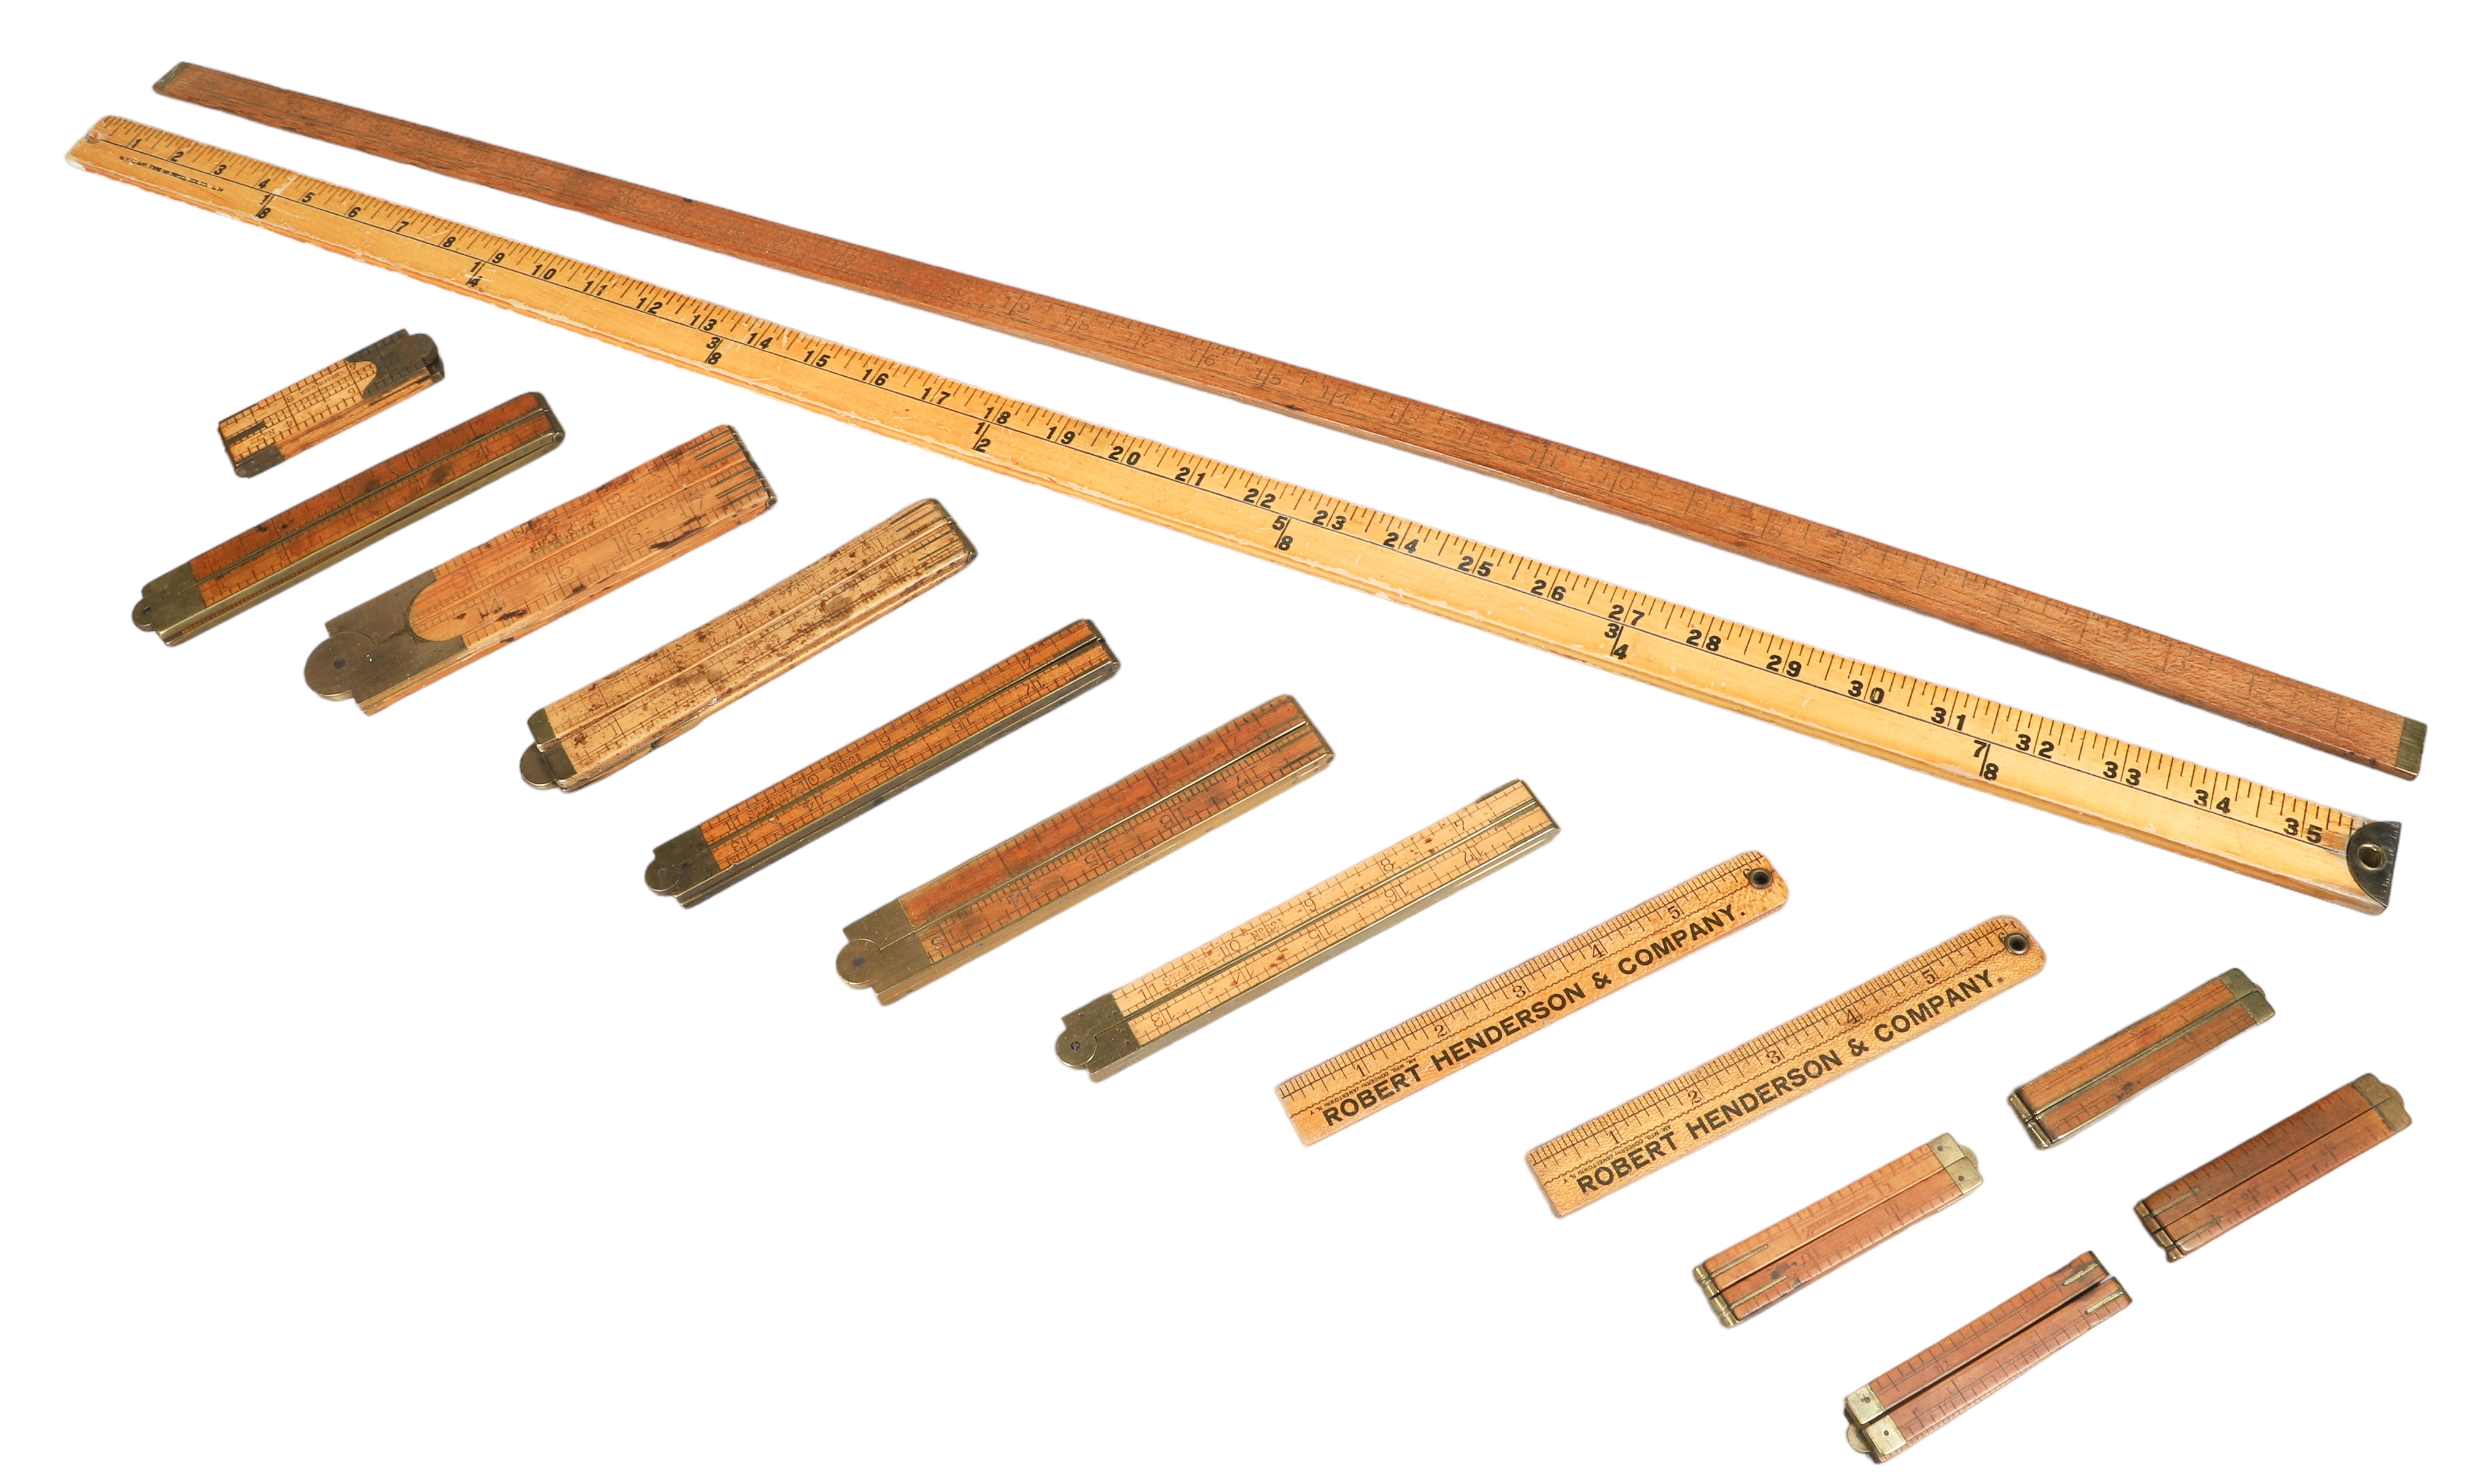 (17) Measuring sticks, c/o (11)